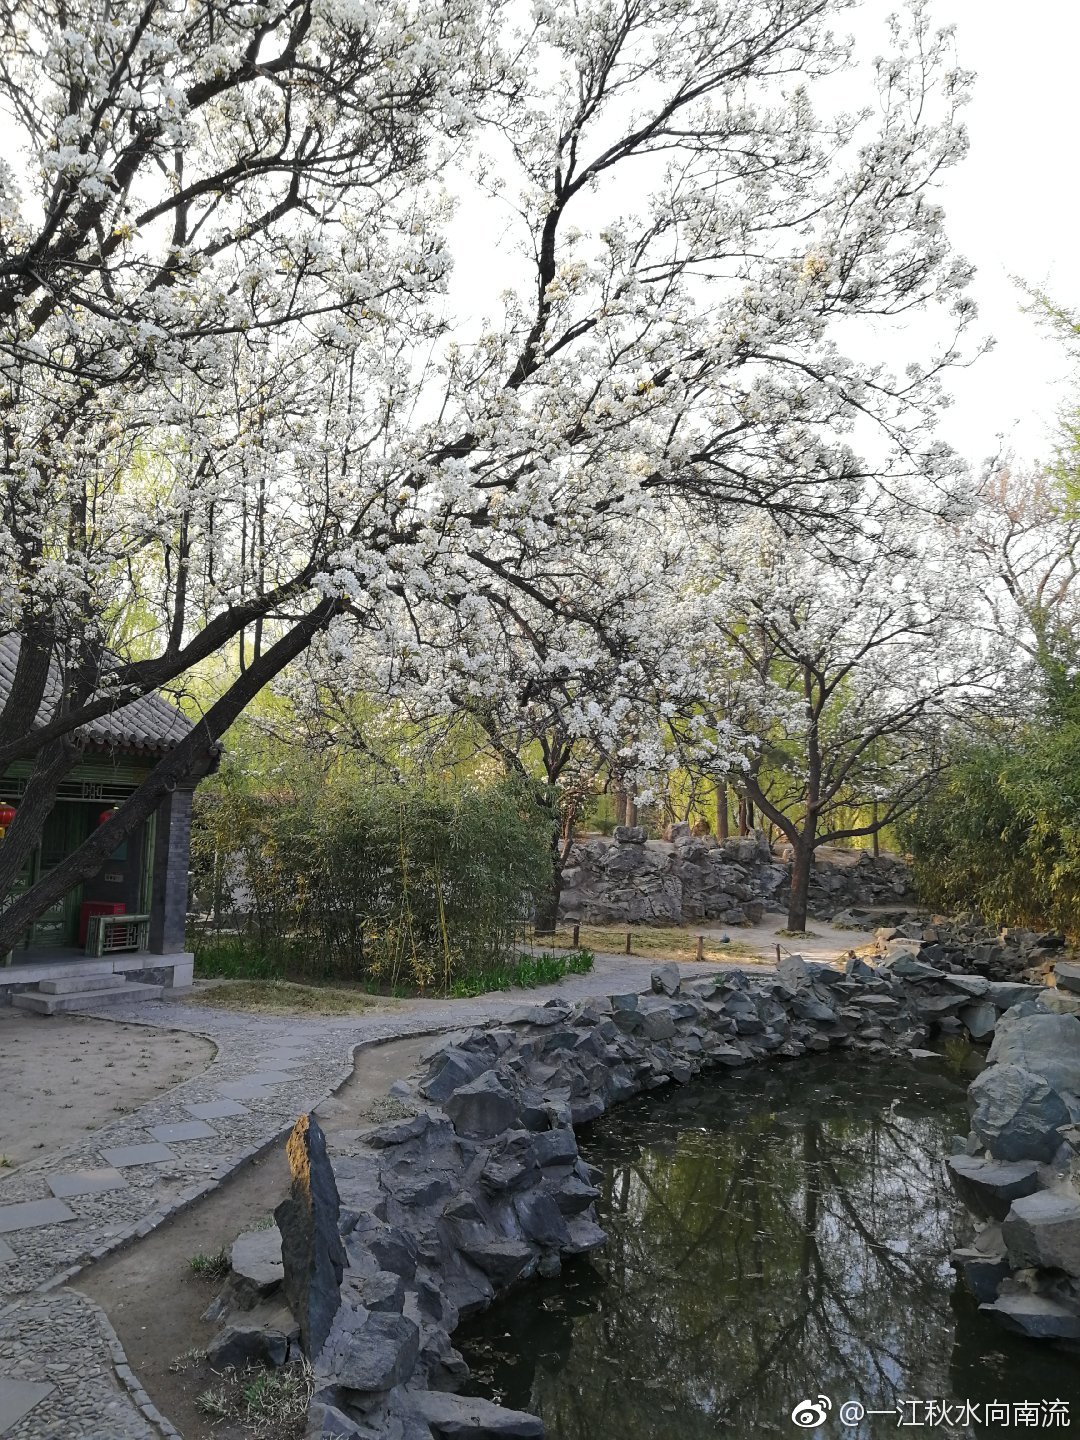 【携程攻略】北京怡红院景点,“怡红院”大观园中最雍容华贵、富丽堂皇的院落，贾宝玉的住所，也是…